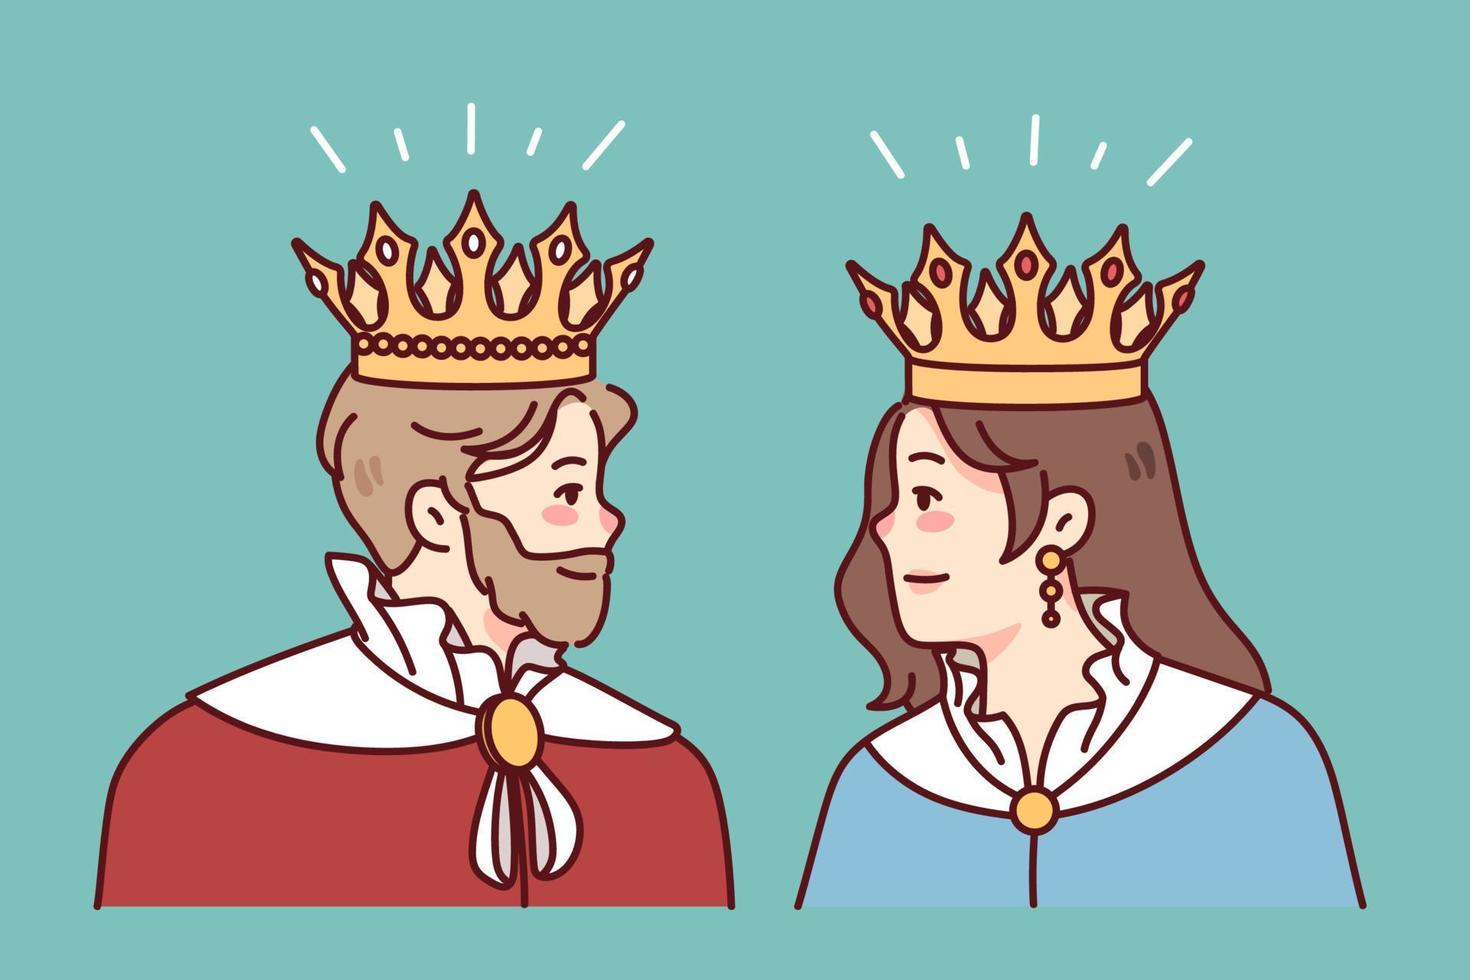 koning en koningin in mantels en kronen kijken Bij elk ander. leden van Koninklijk familie in Jurken. royalty en monarchie. vector illustratie.